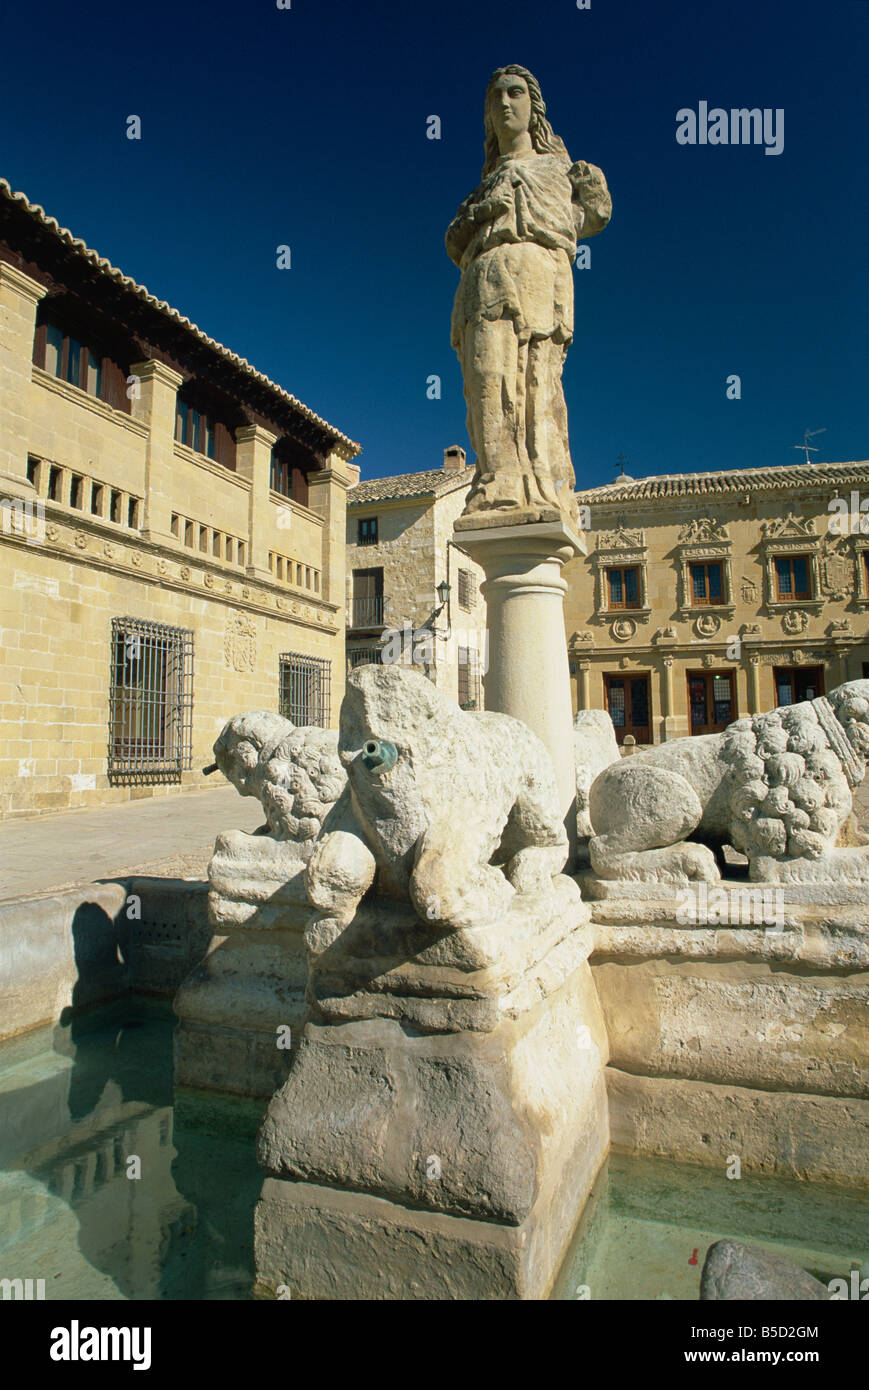 La Fuente de Los Leones (la fontana dei leoni) in Plaza del Populo (Plaza de Los Leones), Baeza, Jaen, Andalusia, Spagna Foto Stock